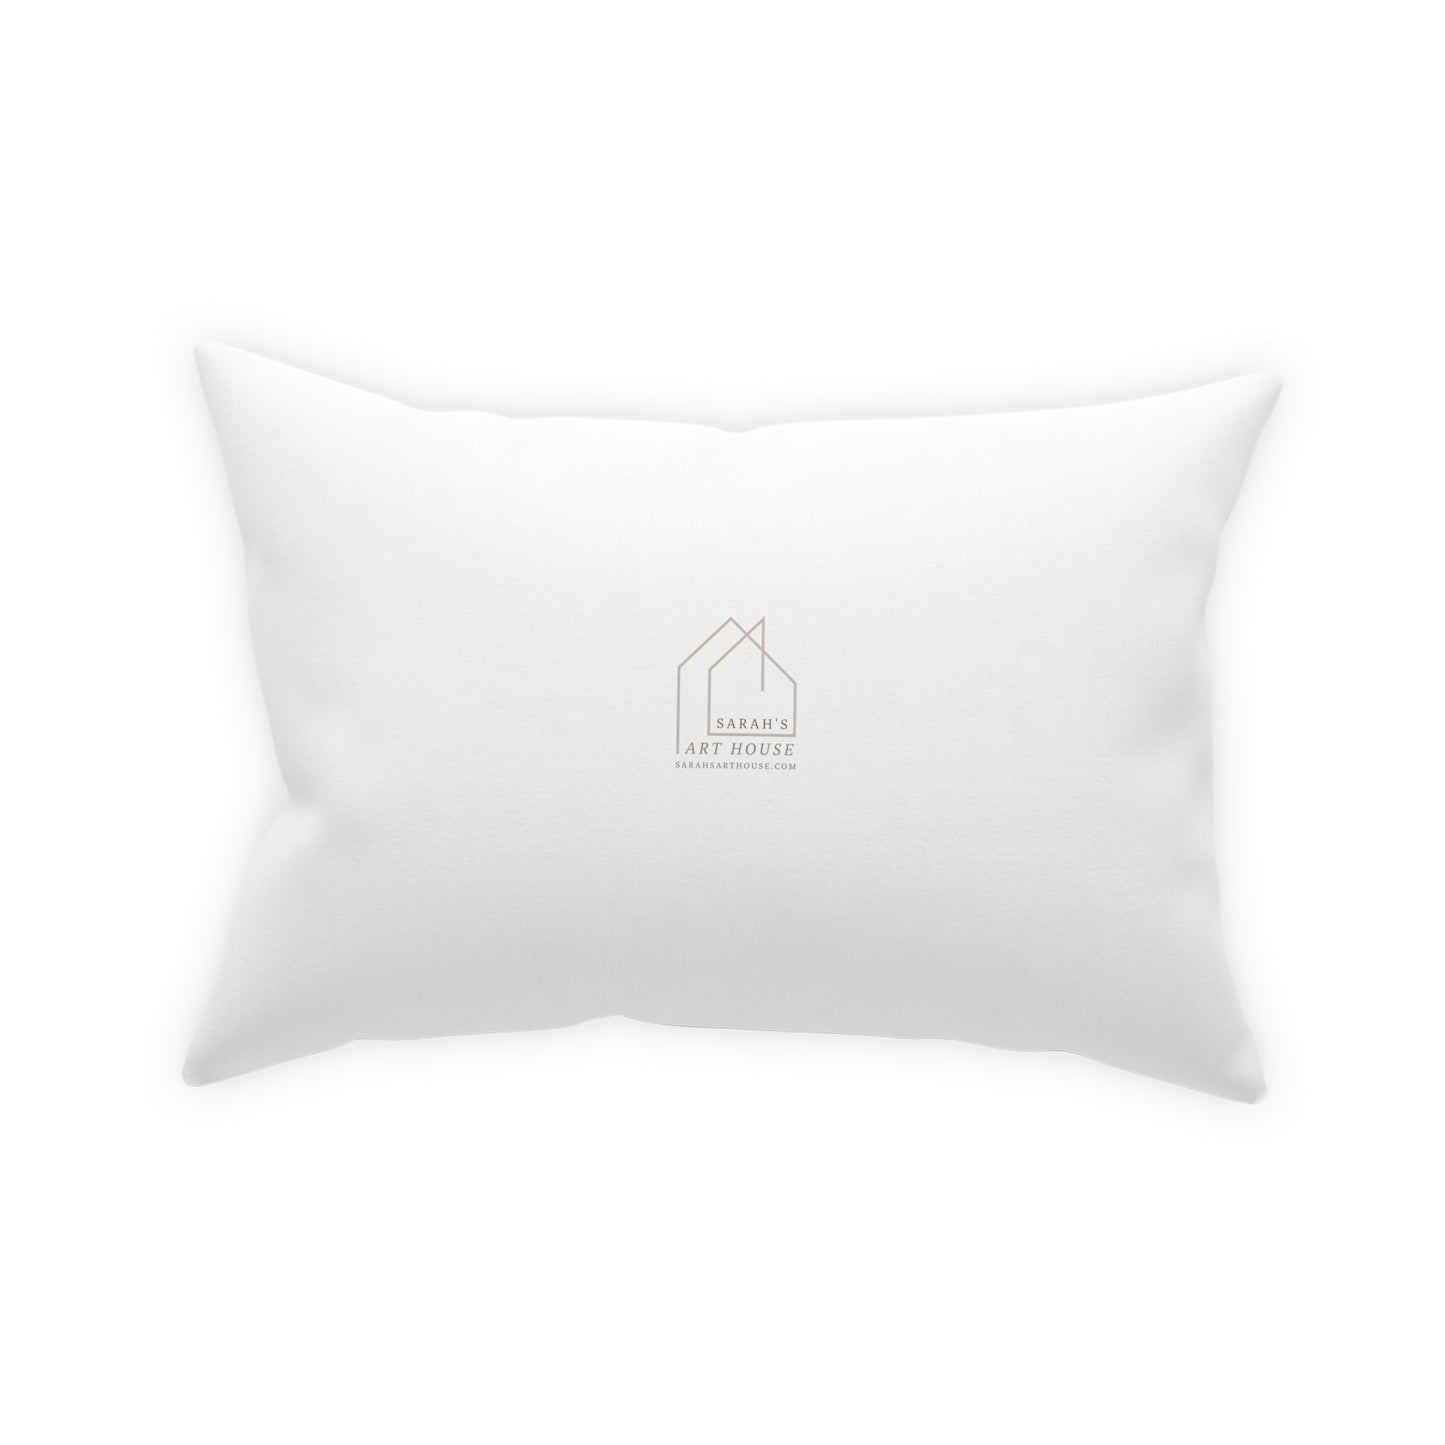 White Throw Pillow - Heart throw Pillow - Colorful Throw pillow for sofa